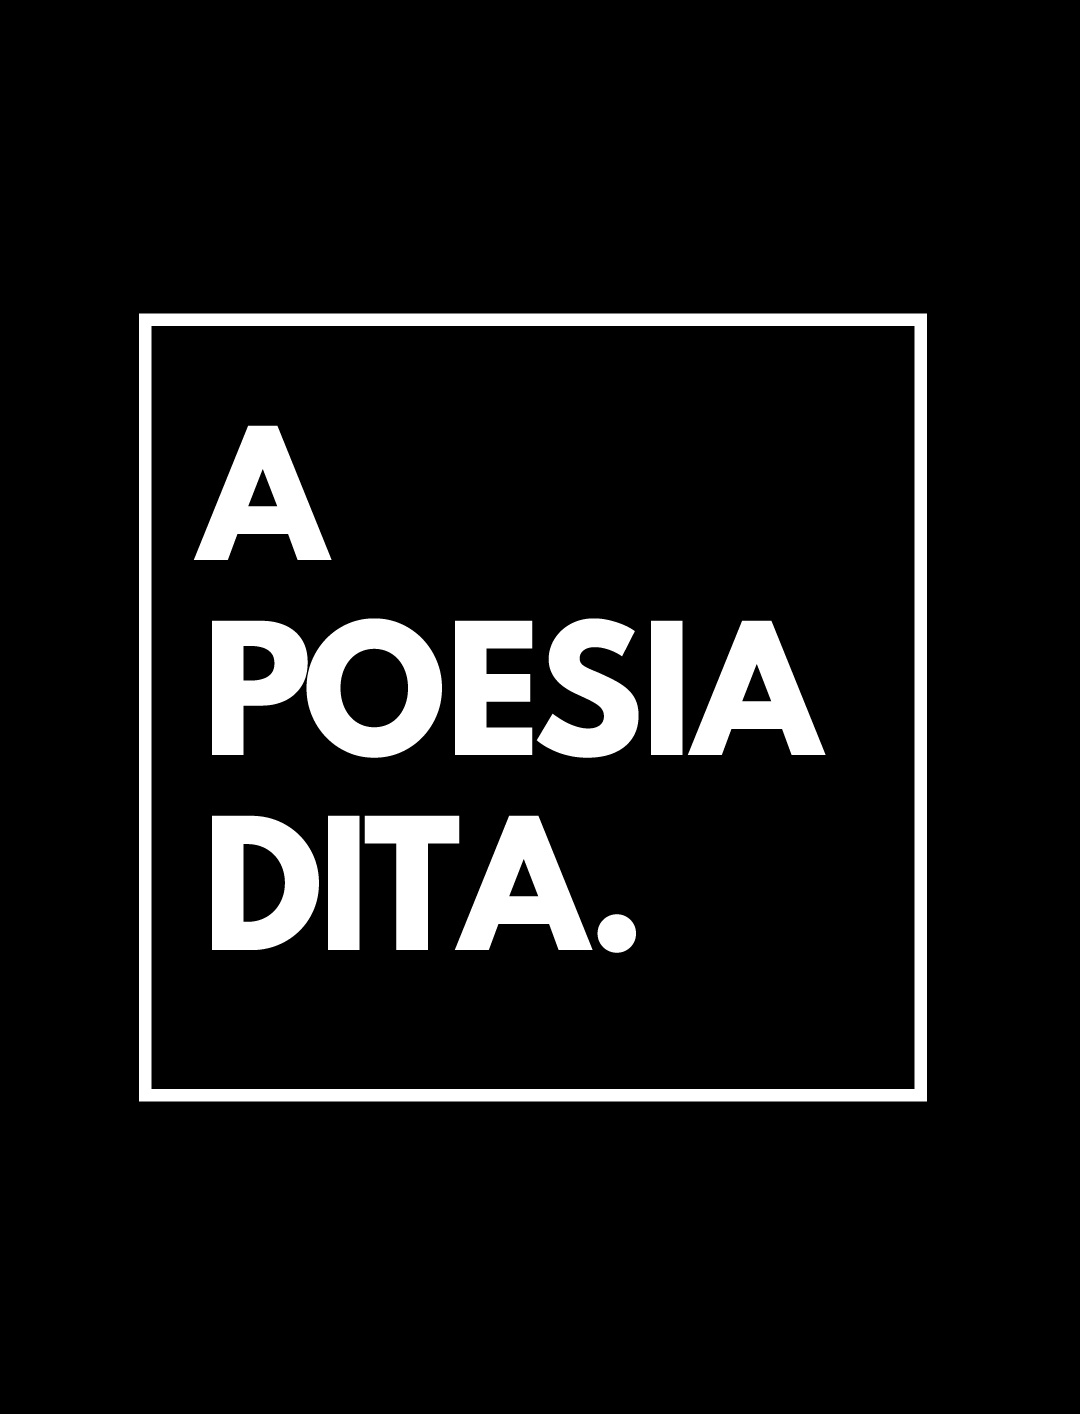 Dois Amores Rápidos, um poema de Paulo Henriques Britto n’A Poesia Dita.